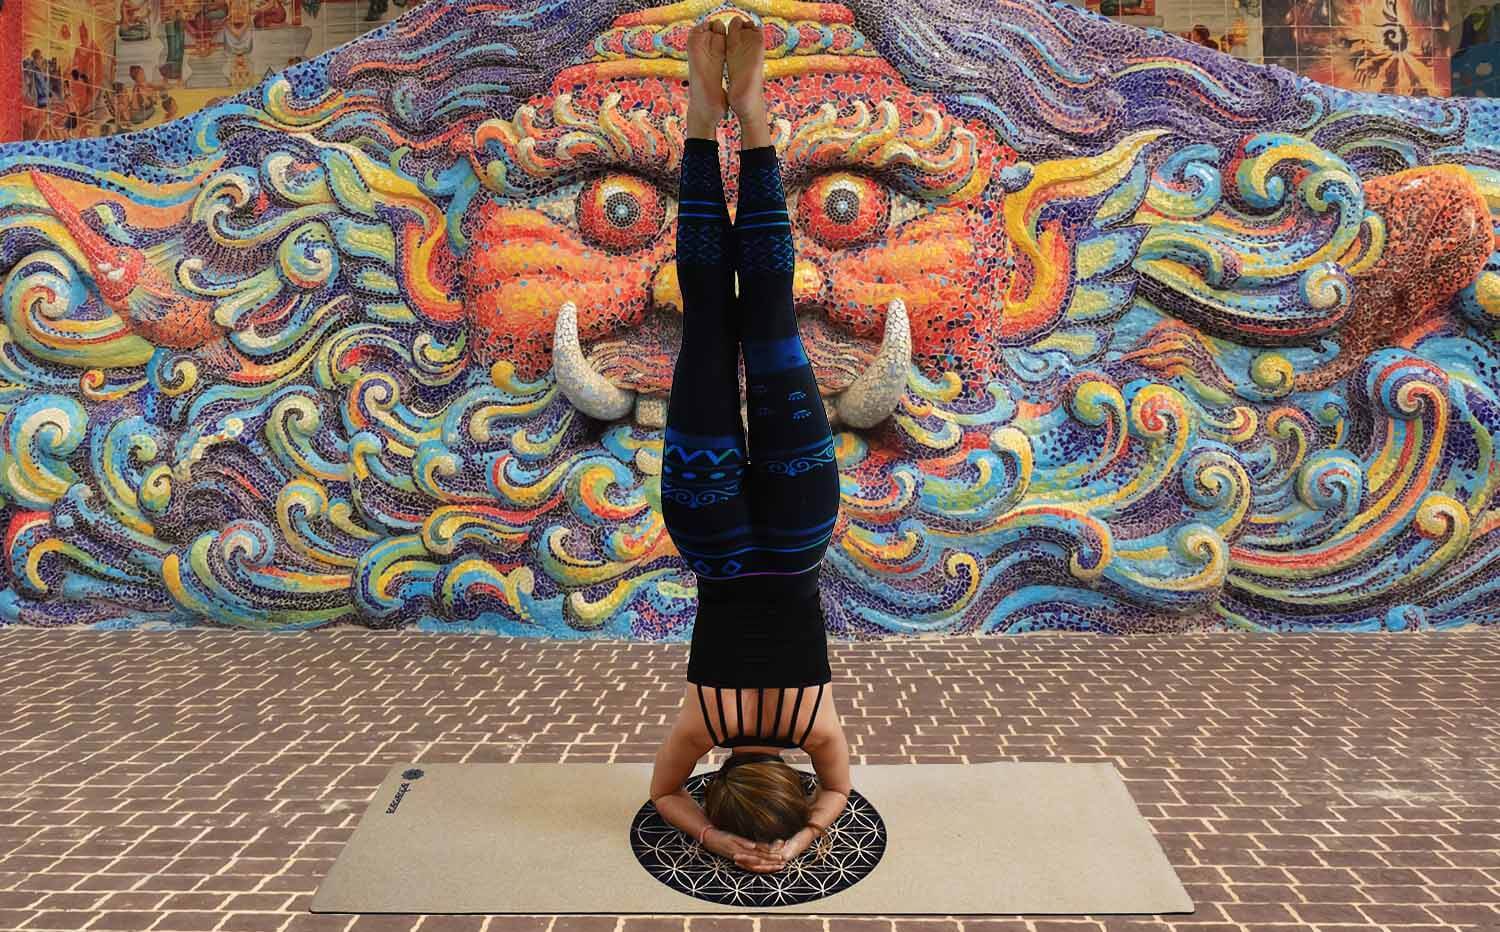 Magasin yoga bordeaux - Yogini en legging yoga - om tibetain - posture inversée sur un tapis de yogs fleur de vie - Achamana